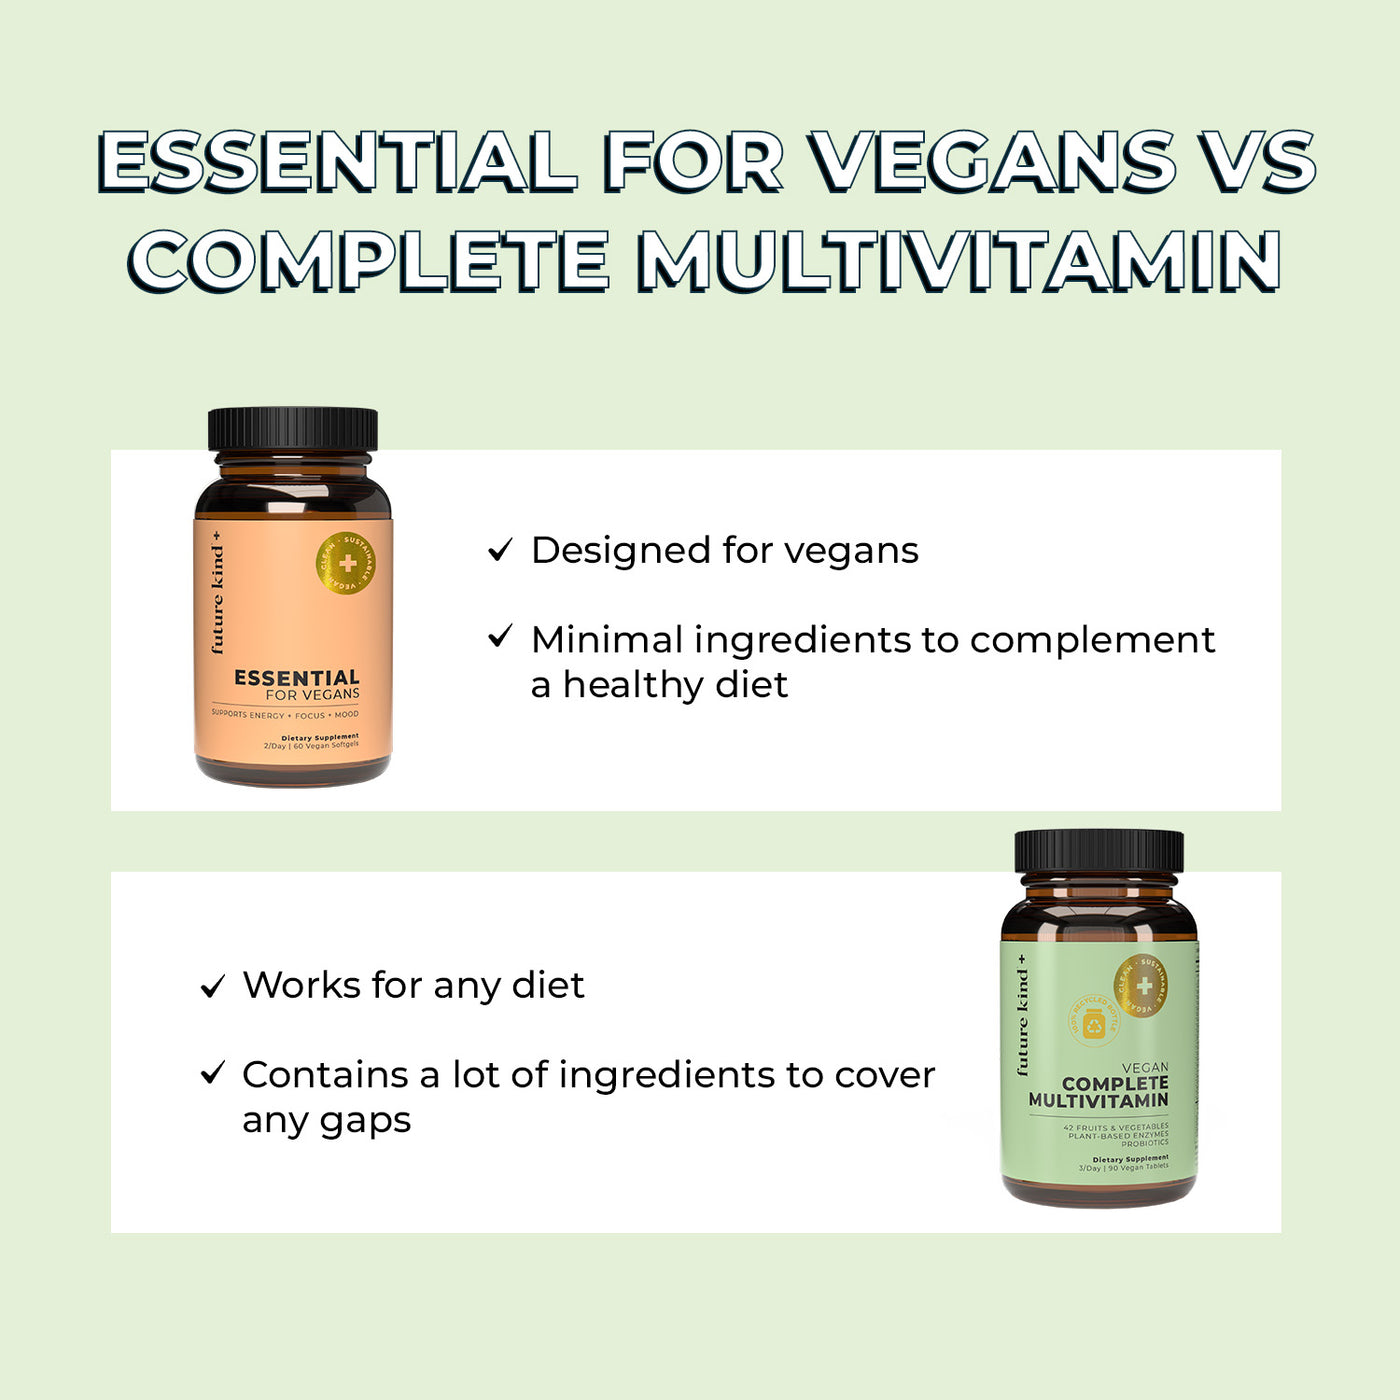 Vegan Complete Multivitamin (Vitamins + Probiotic + Enzymes)